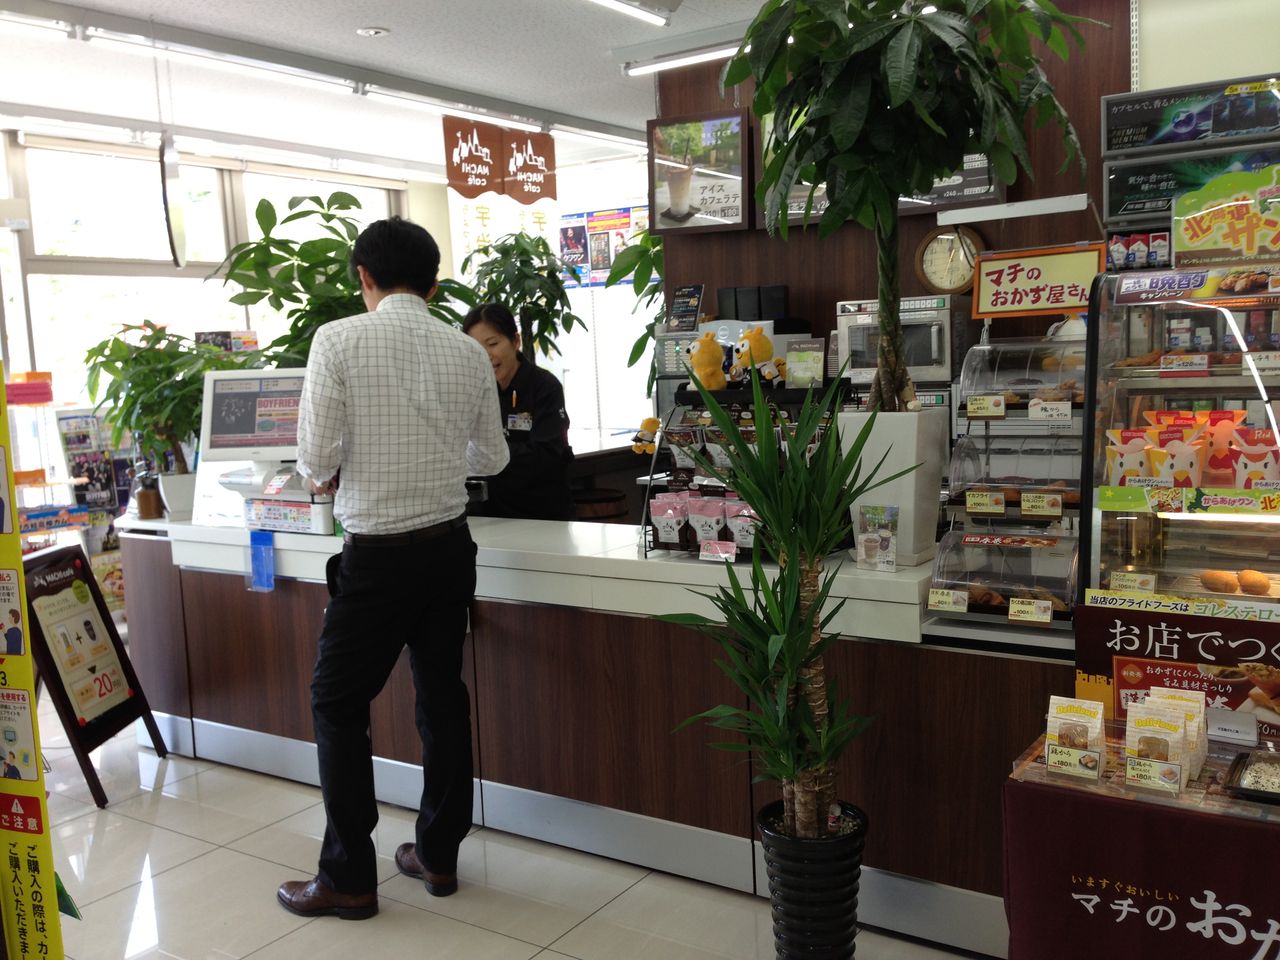 ローソンの マチカフェ プロジェクトは成功するのか 3216投稿 愛知県名古屋の中古車オークション代行専門会社の 社長日記